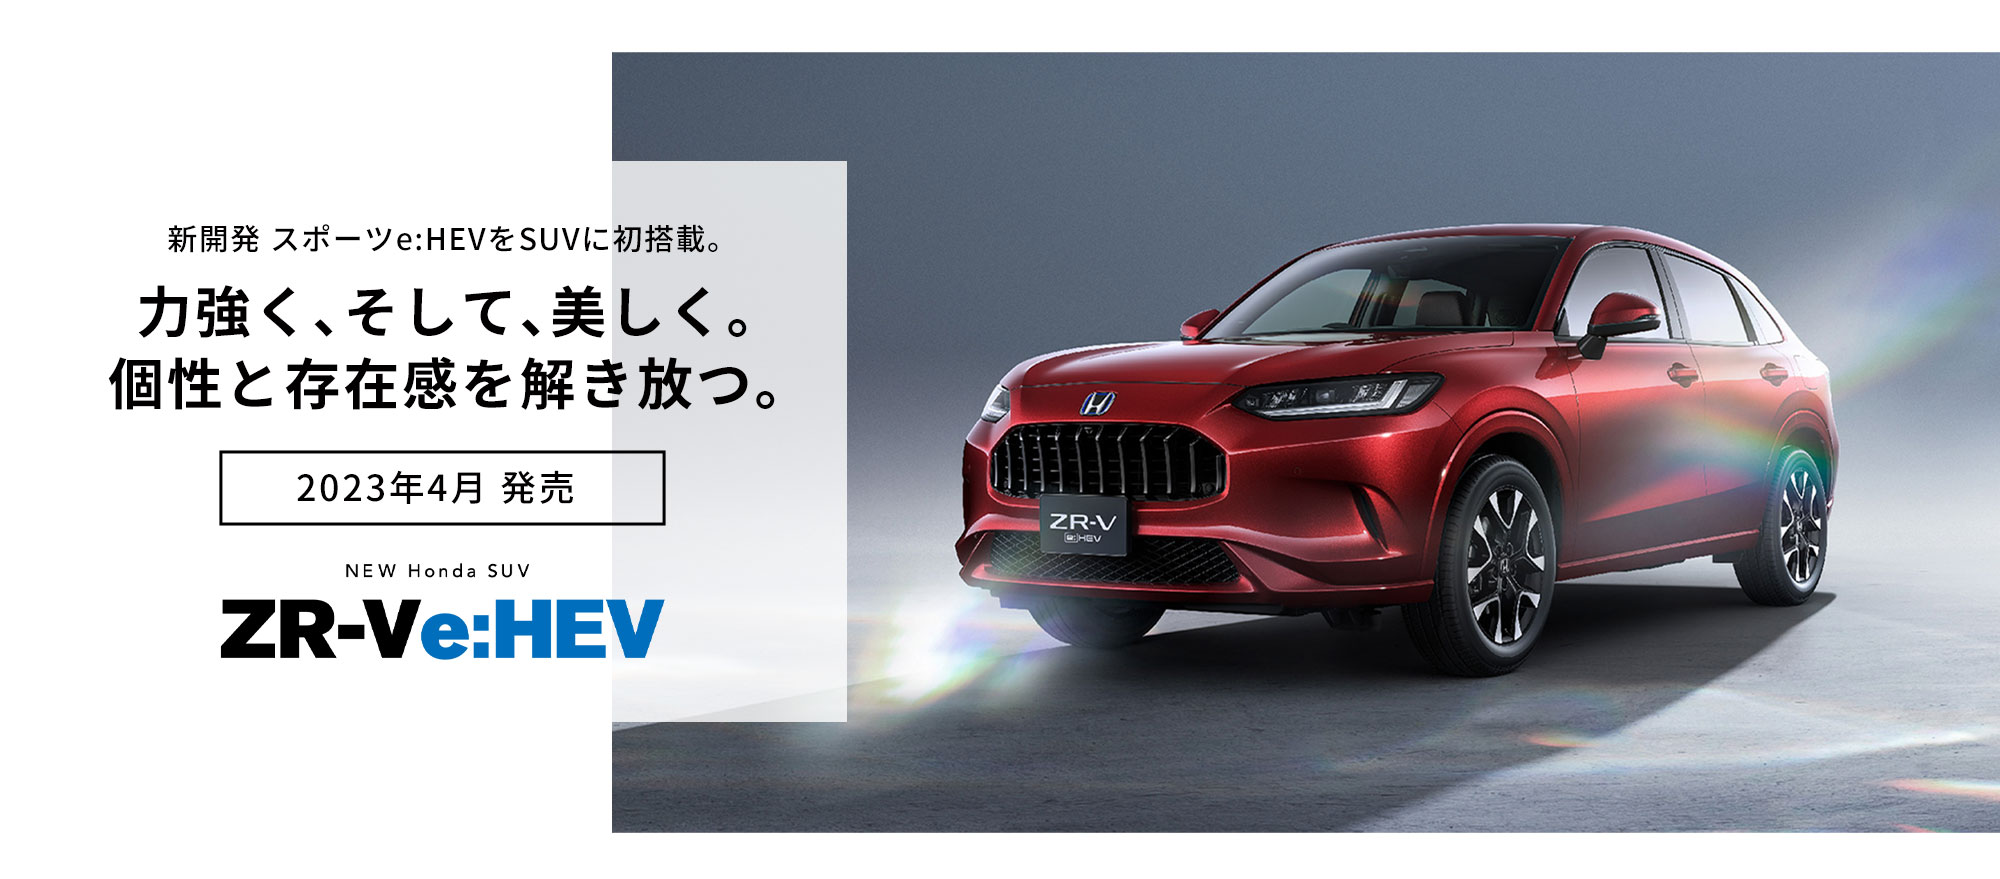 新開発 スポーツe:HEVをSUVに初搭載。力強く、そして、美しく。個性と存在感を解き放つ。2023年4月 発売 NEW Honda SUV ZR-Ve:HEV